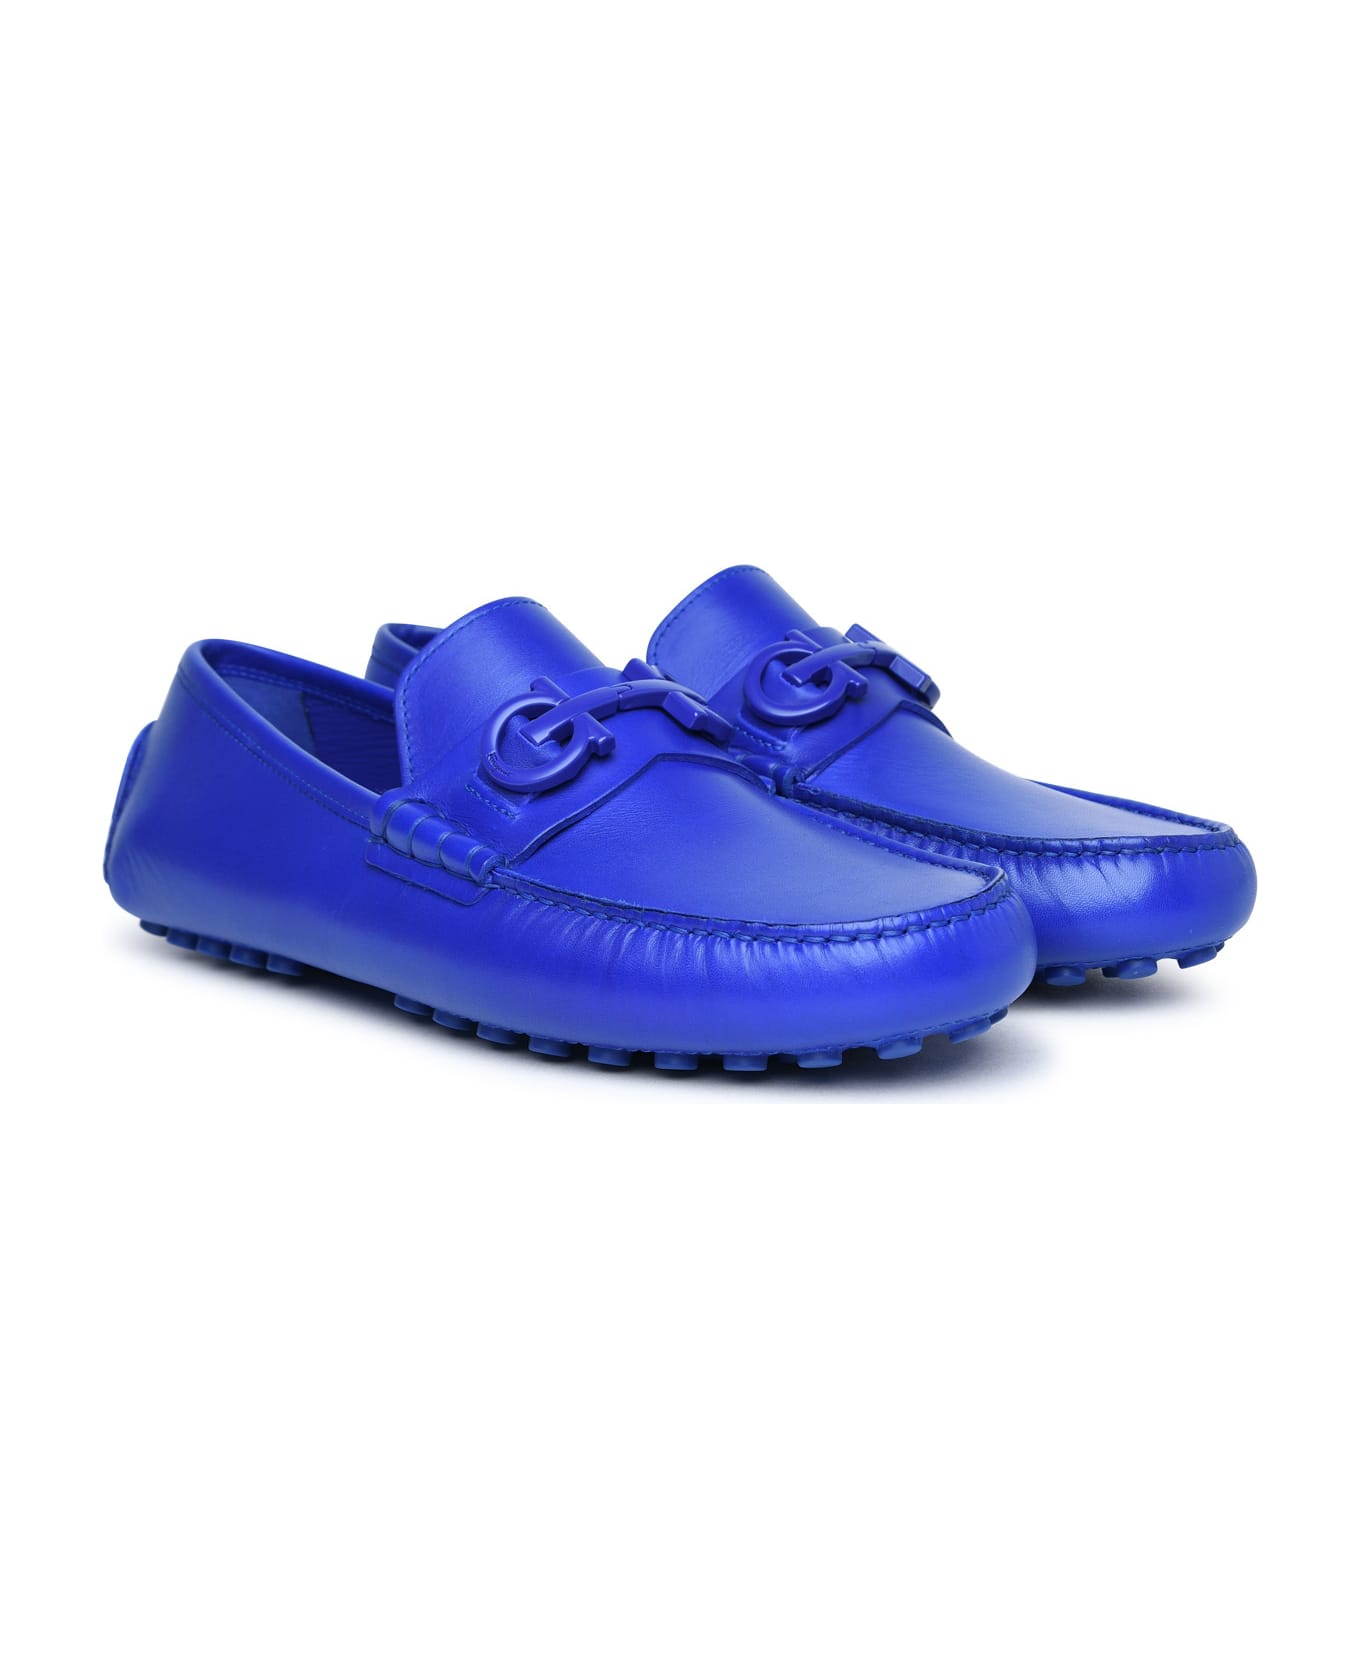 Ferragamo 'grazioso' Blue Leather Loafers - Blue